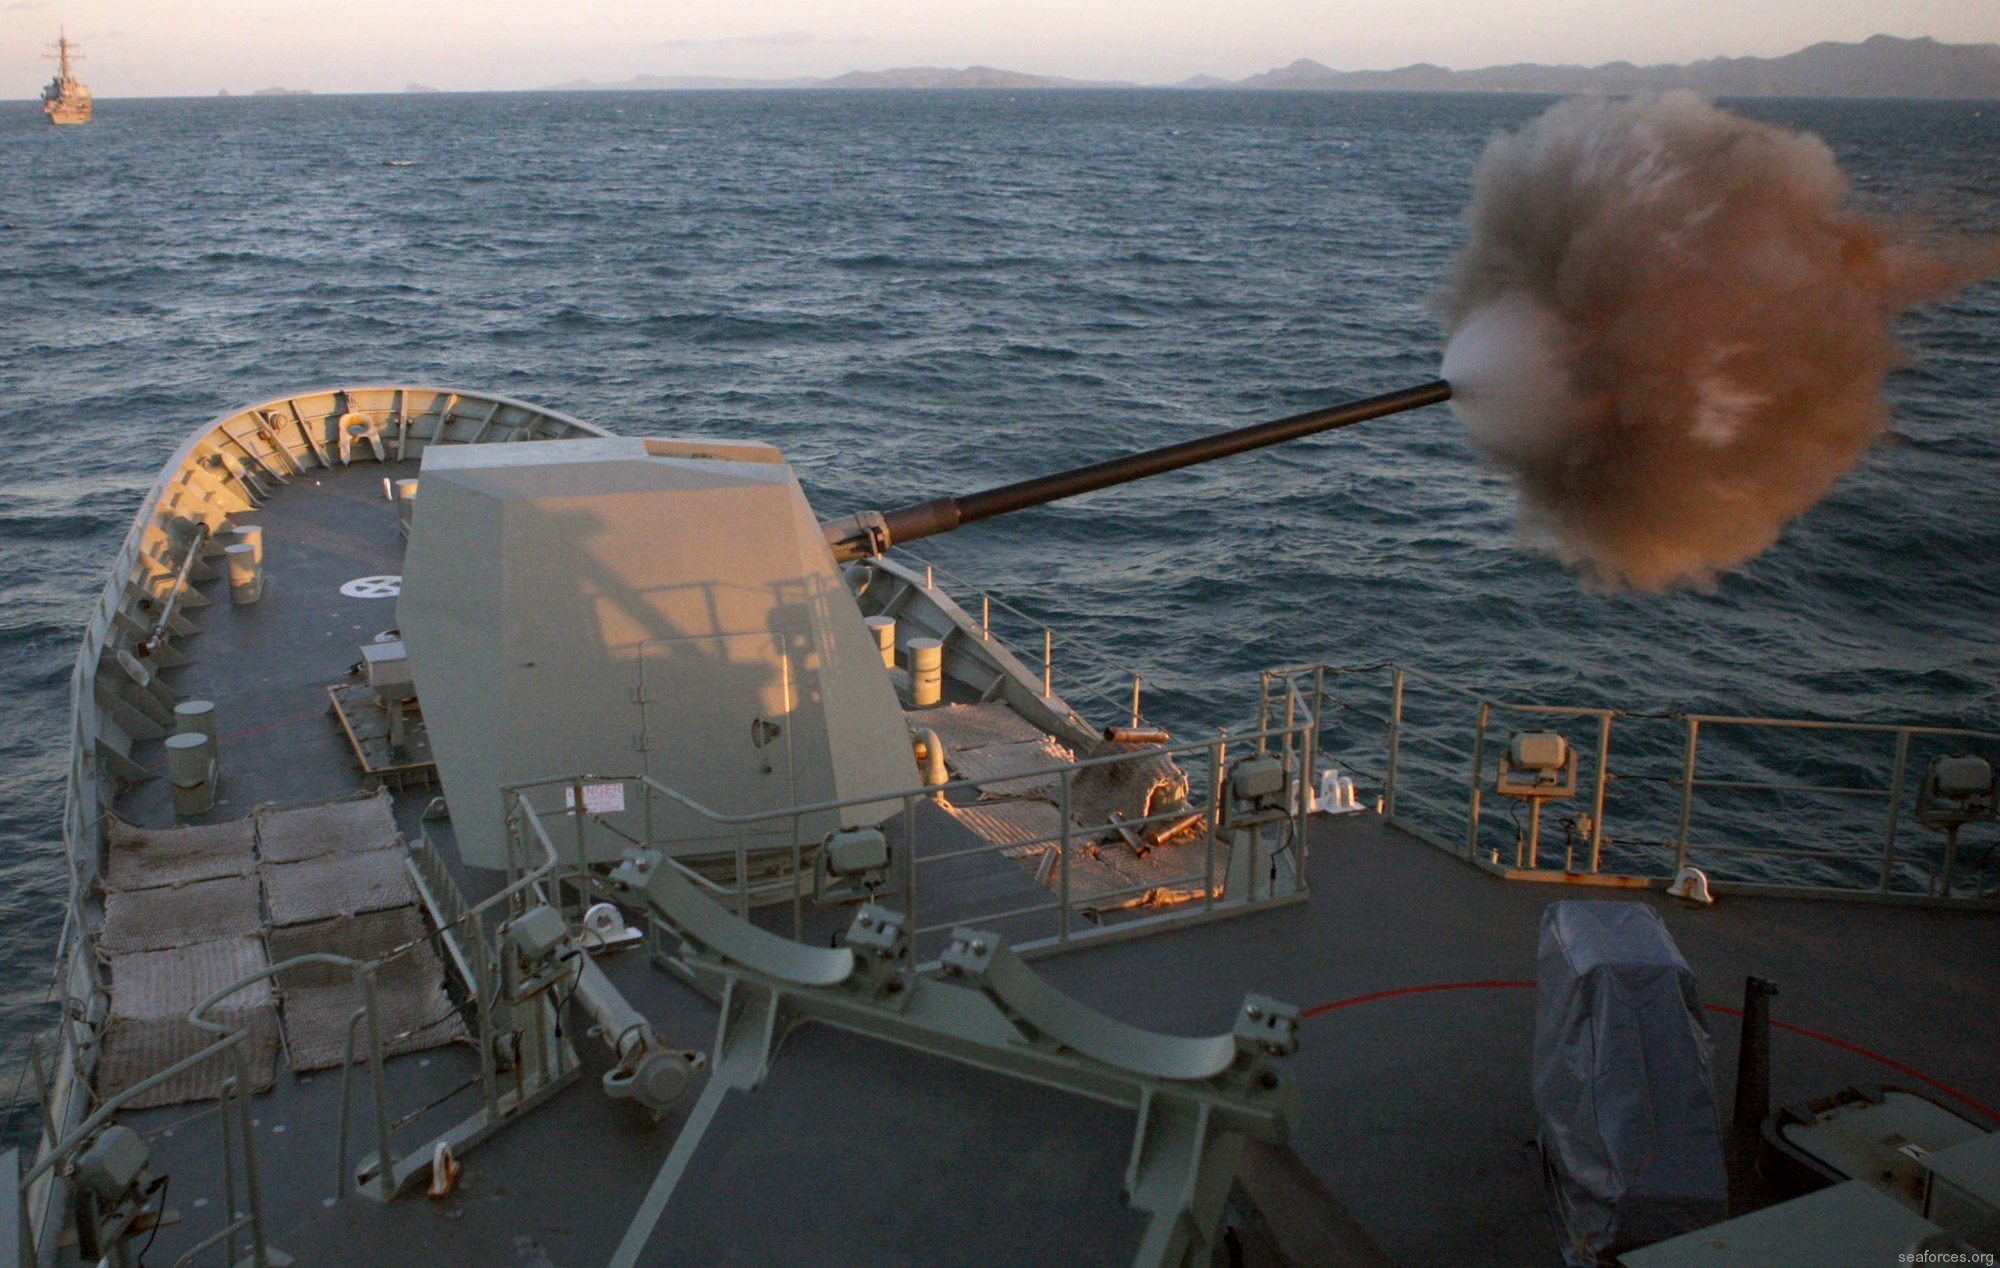 ffh-155 hms ballarat anzac class frigate royal australian navy 2011 39 mk-45 5" 54 caliber gun fire